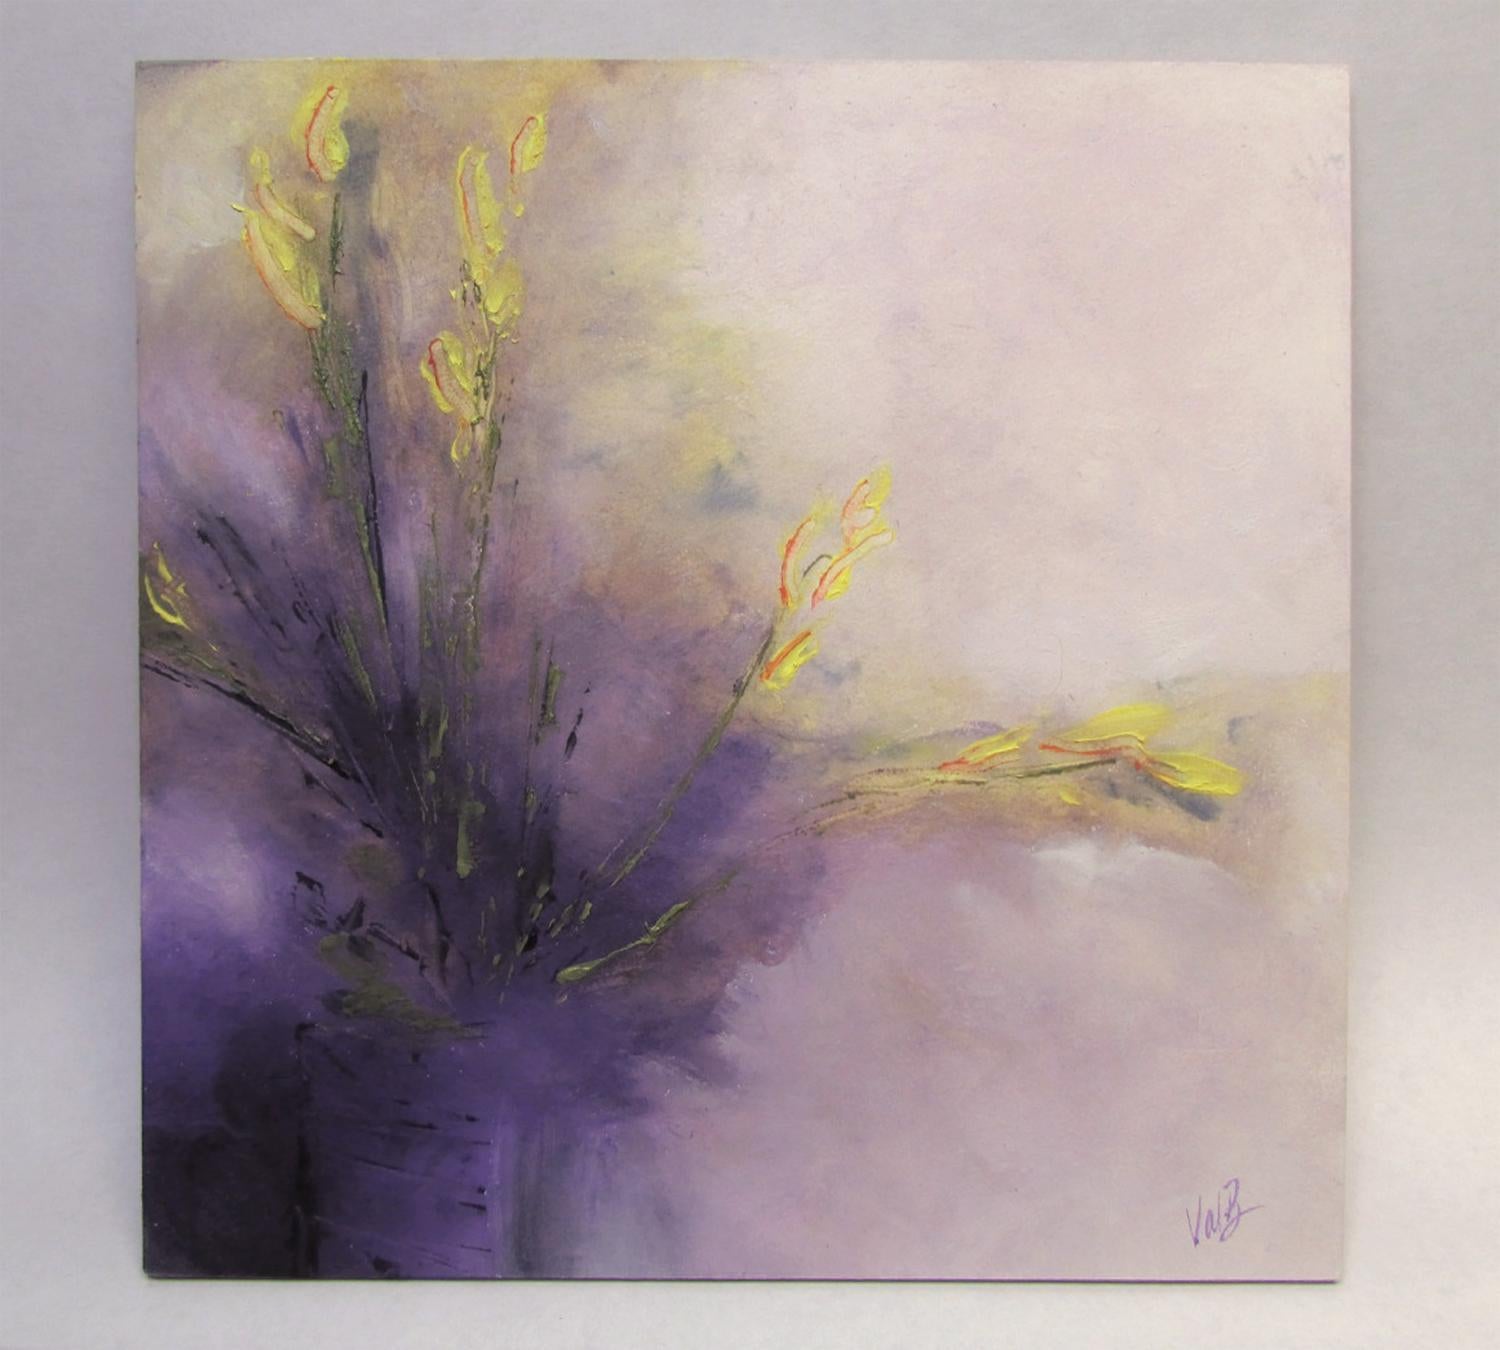 <p>Commentaires de l'artiste<br>En utilisant une palette limitée de violets et de jaunes transparents, l'artiste Valery Berkely présente un floral abstrait apaisant. 